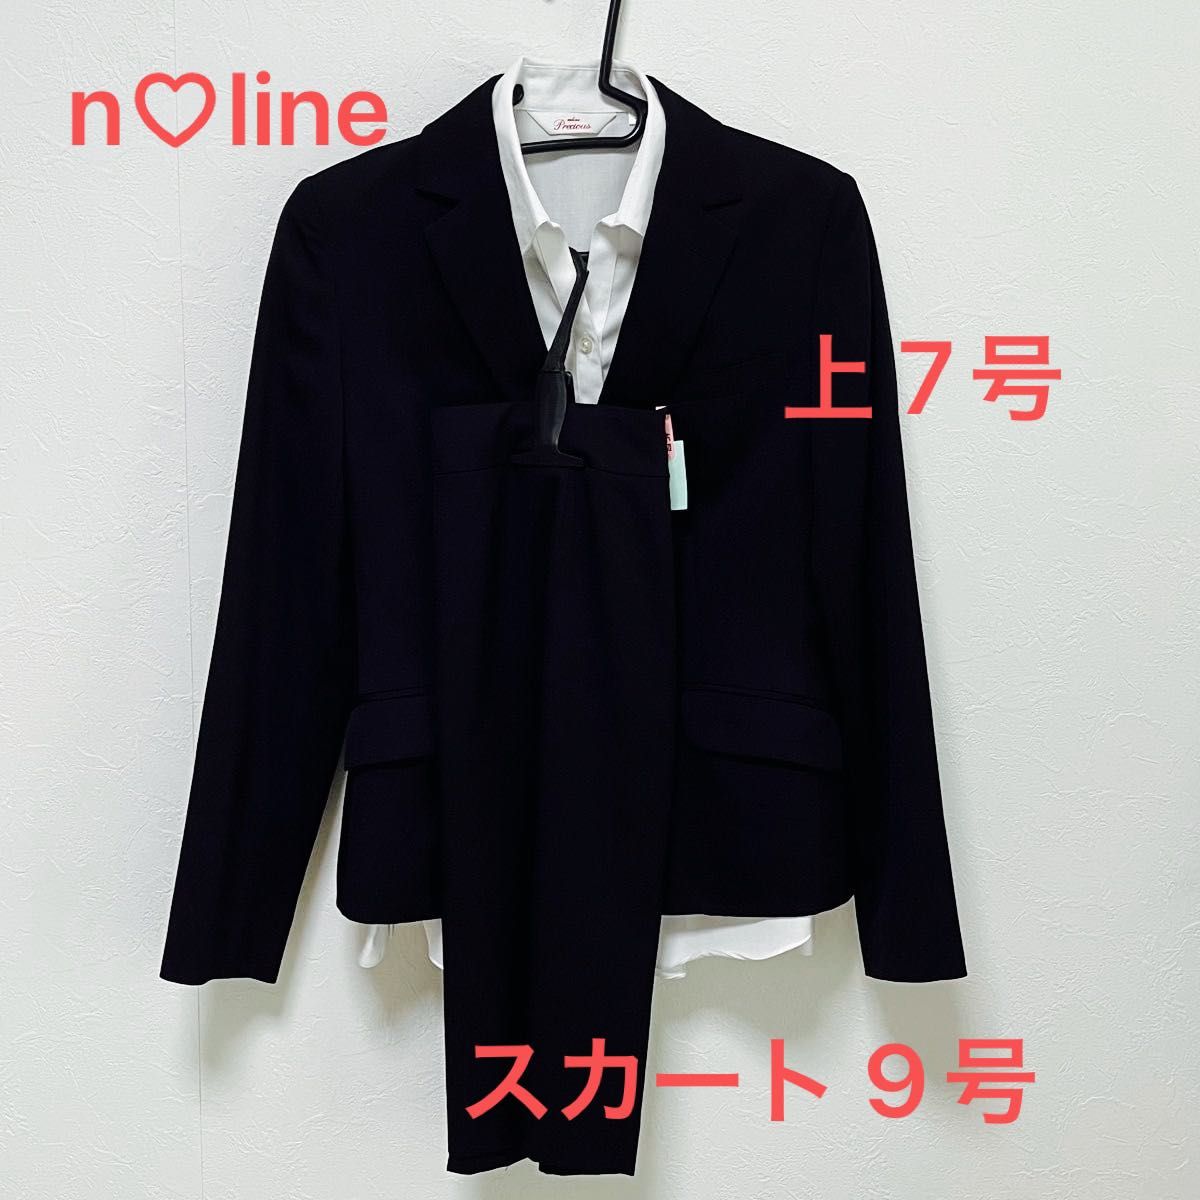 レディーススーツ n line precious ジャケット・シャツ7号/スカート 9号